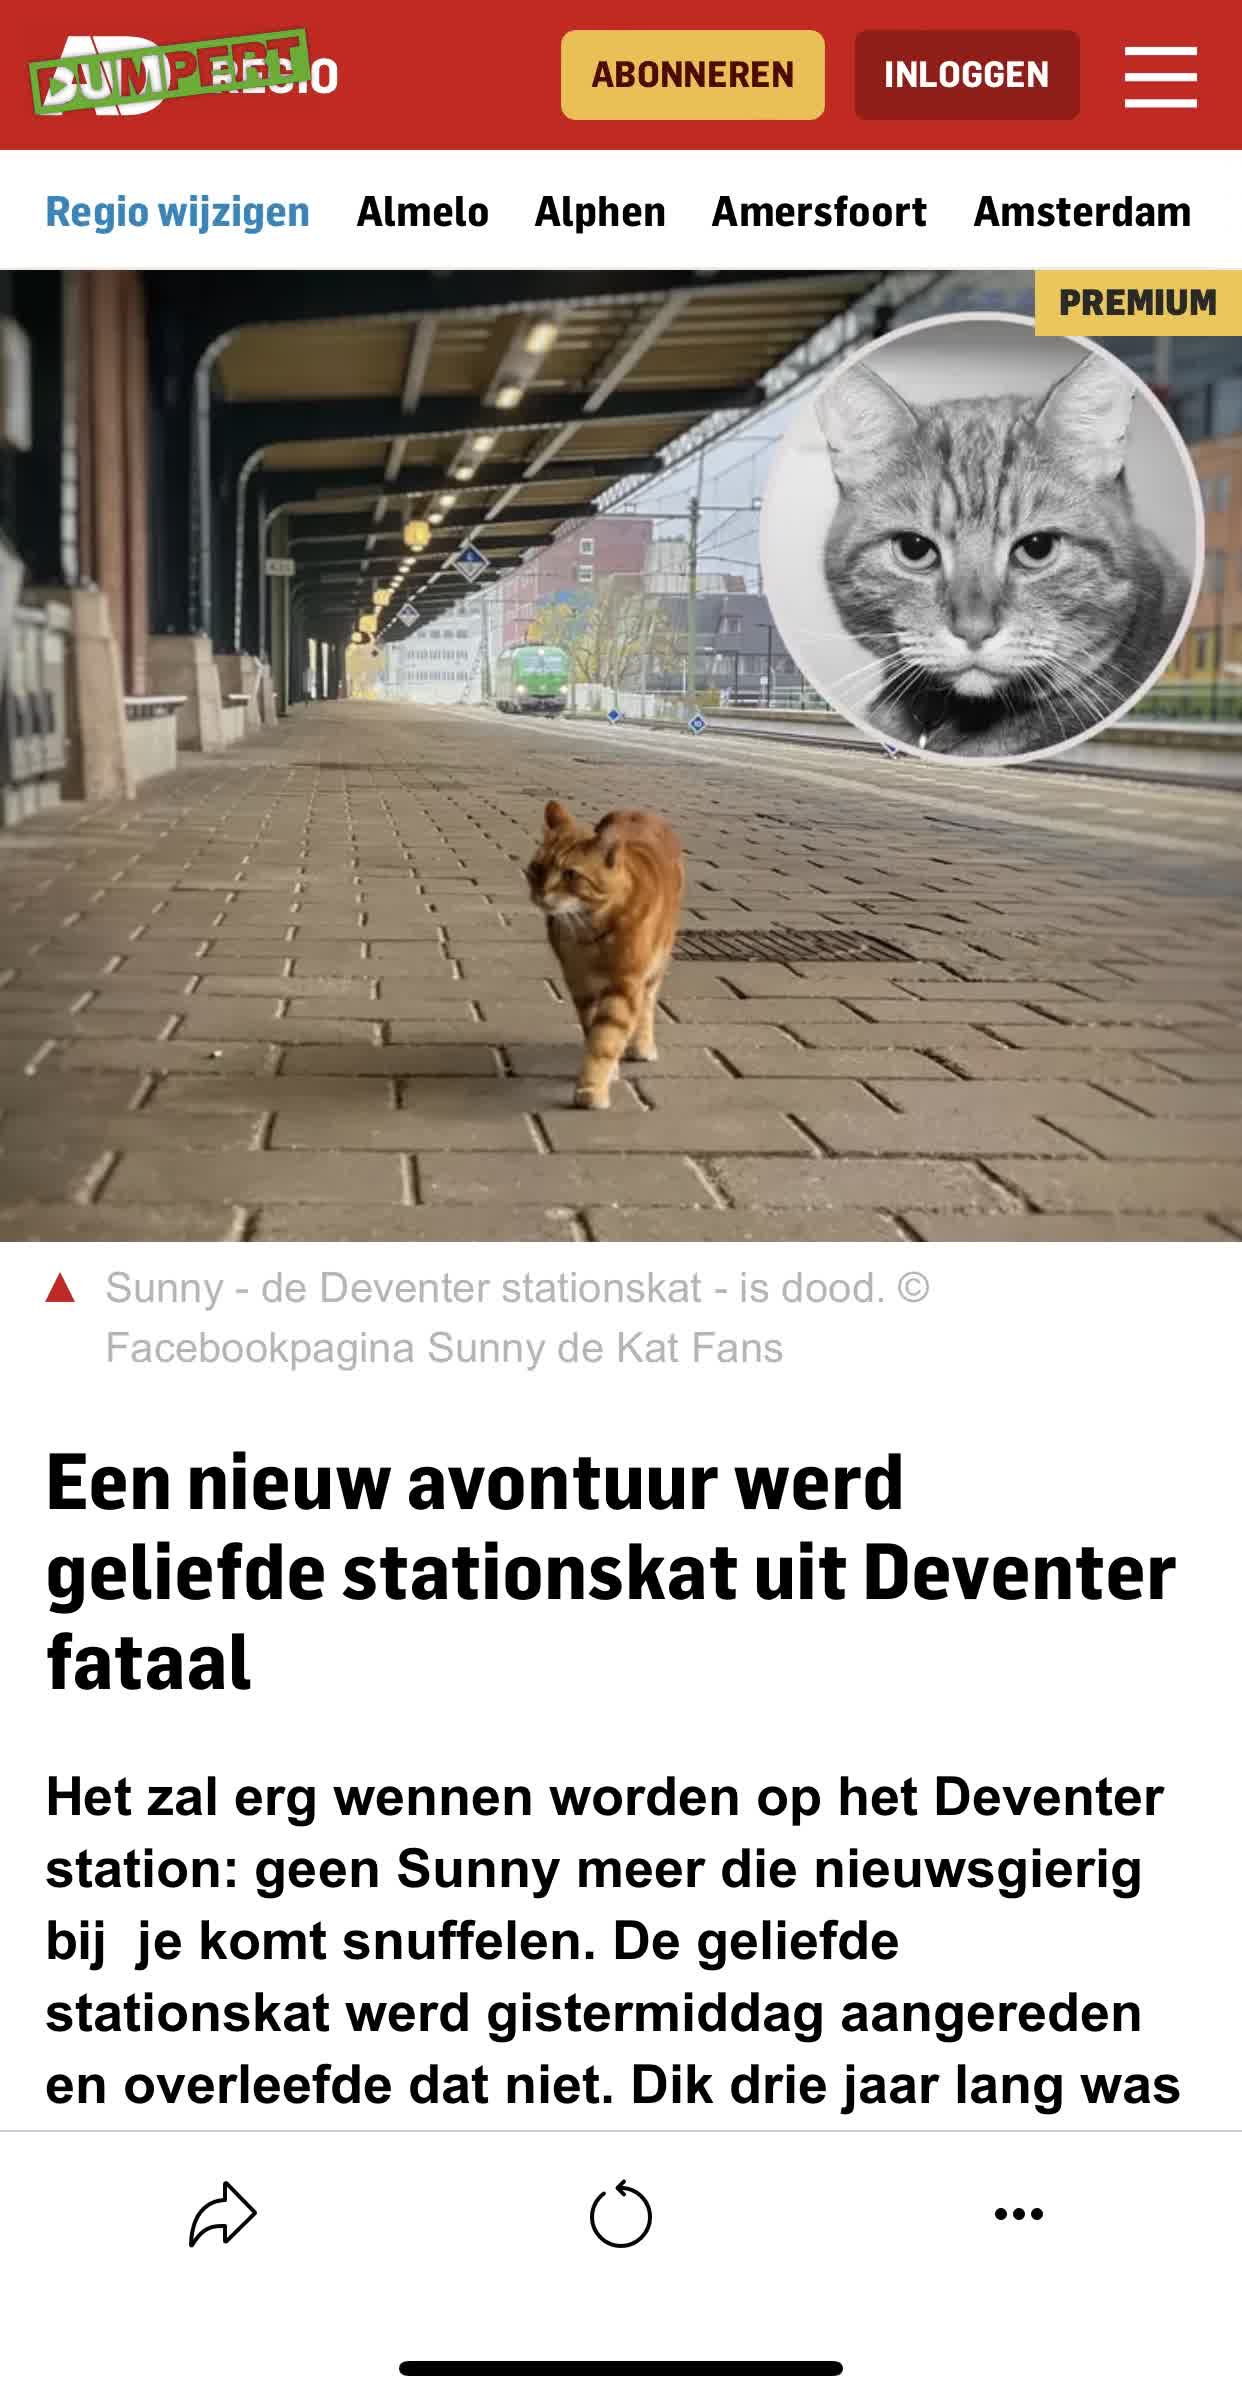 Bekendste kat uit Deventer “Sunny” is niet meer